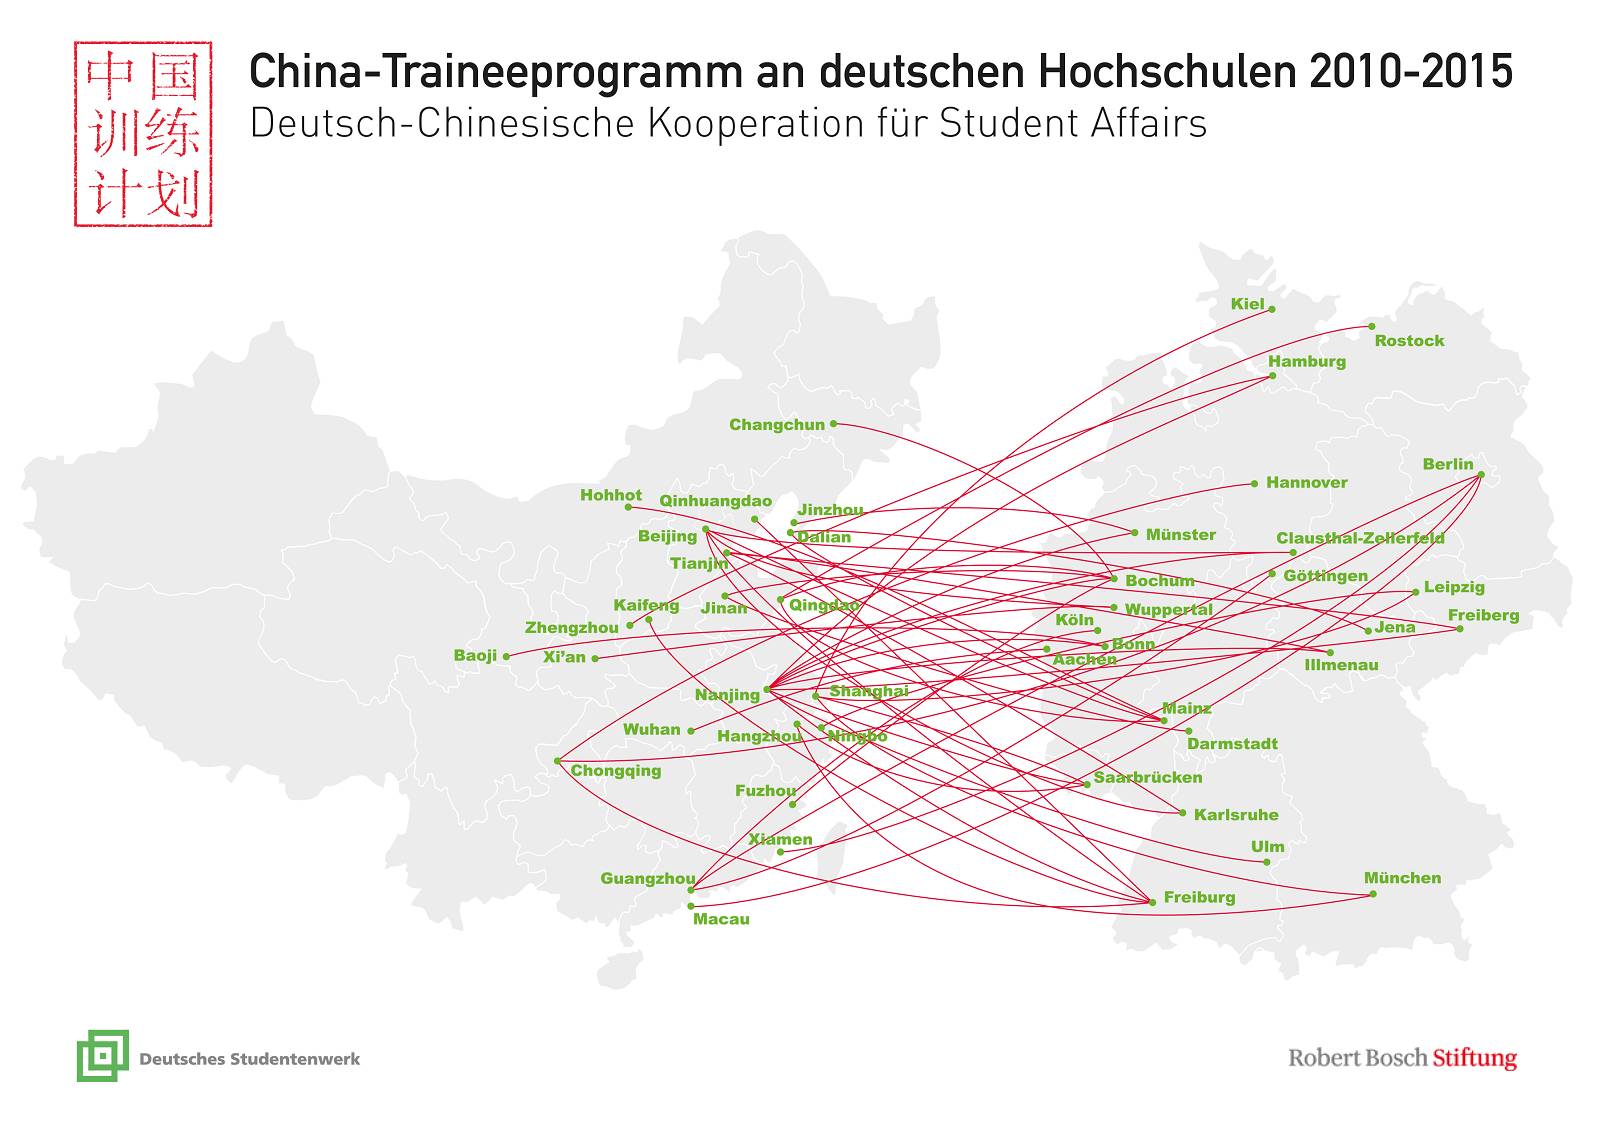 In fünf Jahren China-Trainee-Programm hat ein reger Austausch zwischen deutschen und chinesischen Hochschulen, Studentenwerken und Menschen stattgefunden | (c) Christine Meierhofer/Deutsches Studentenwerk